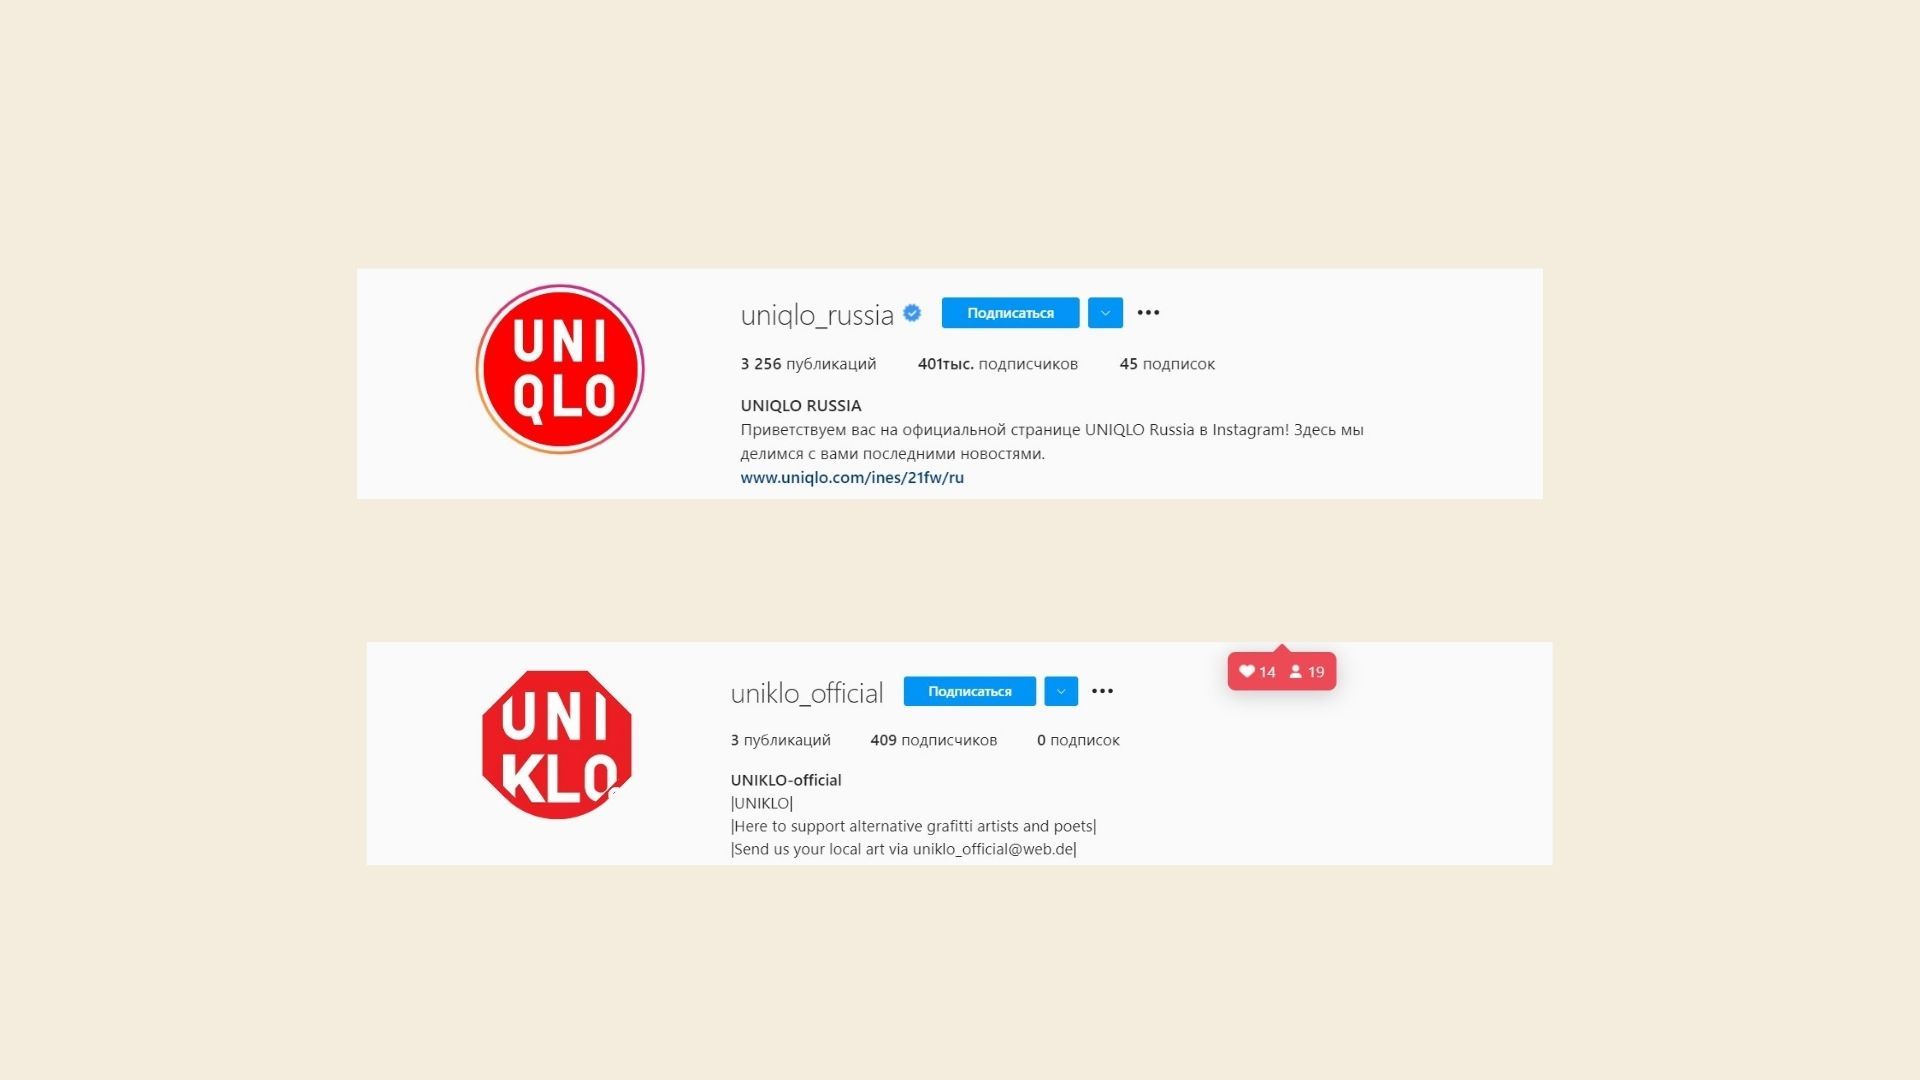 Вот пример официального аккаунта в Инстаграме бренда Uni Qlo и их подражателей — по-моему, все очевидно